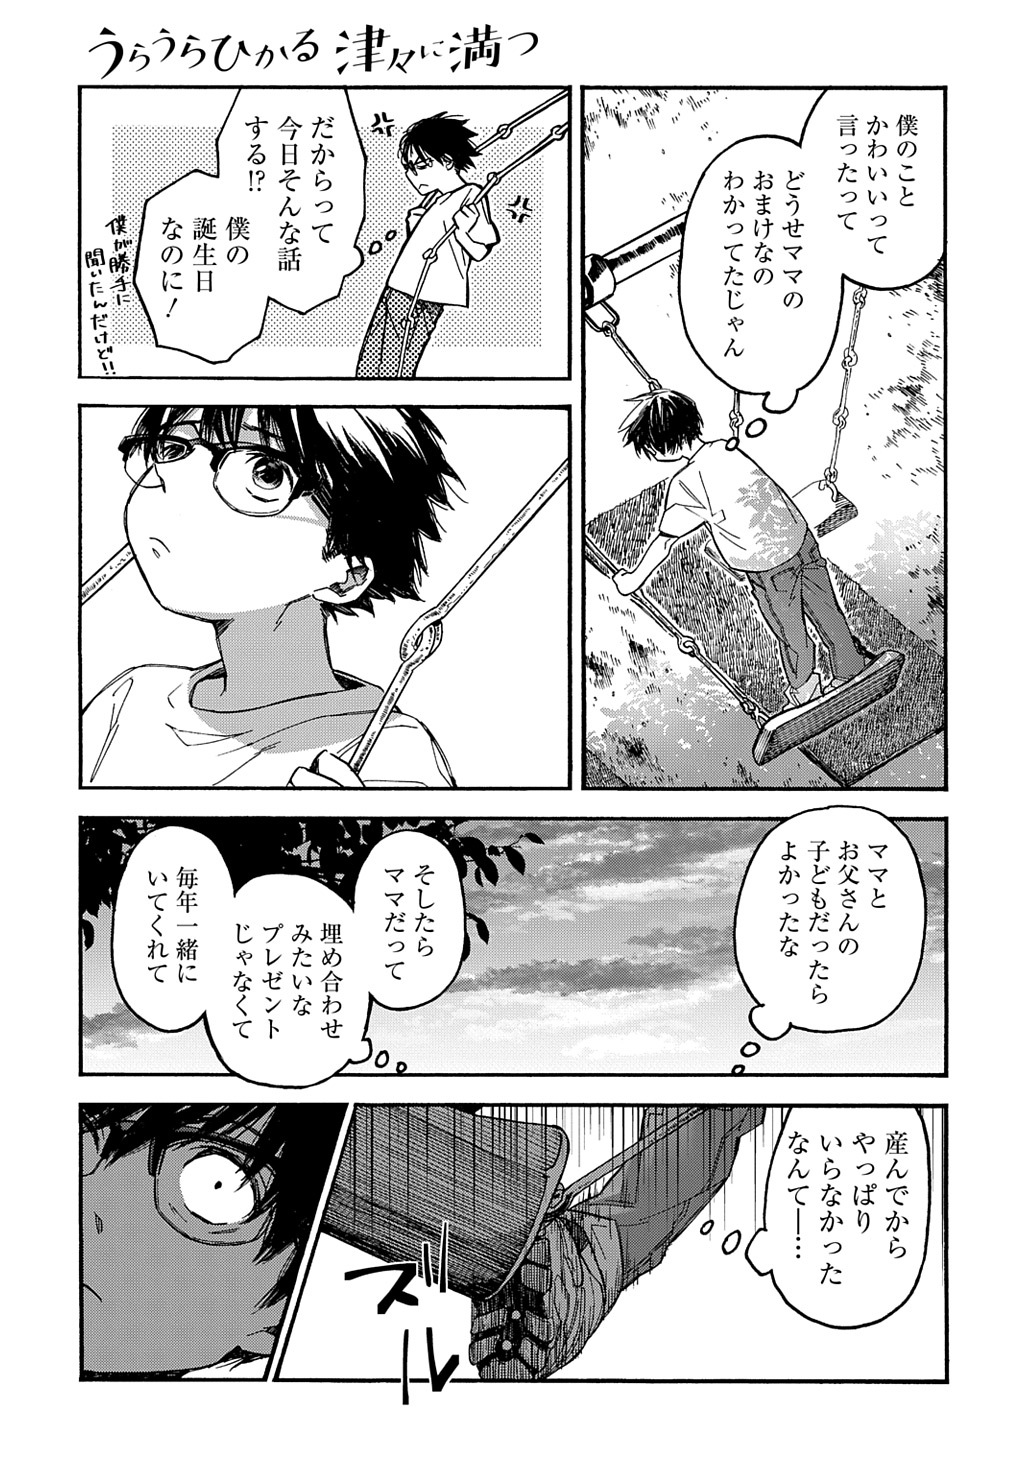 Uraura Hikaru: Shinshin ni Mitsu - Chapter 10 - Page 17